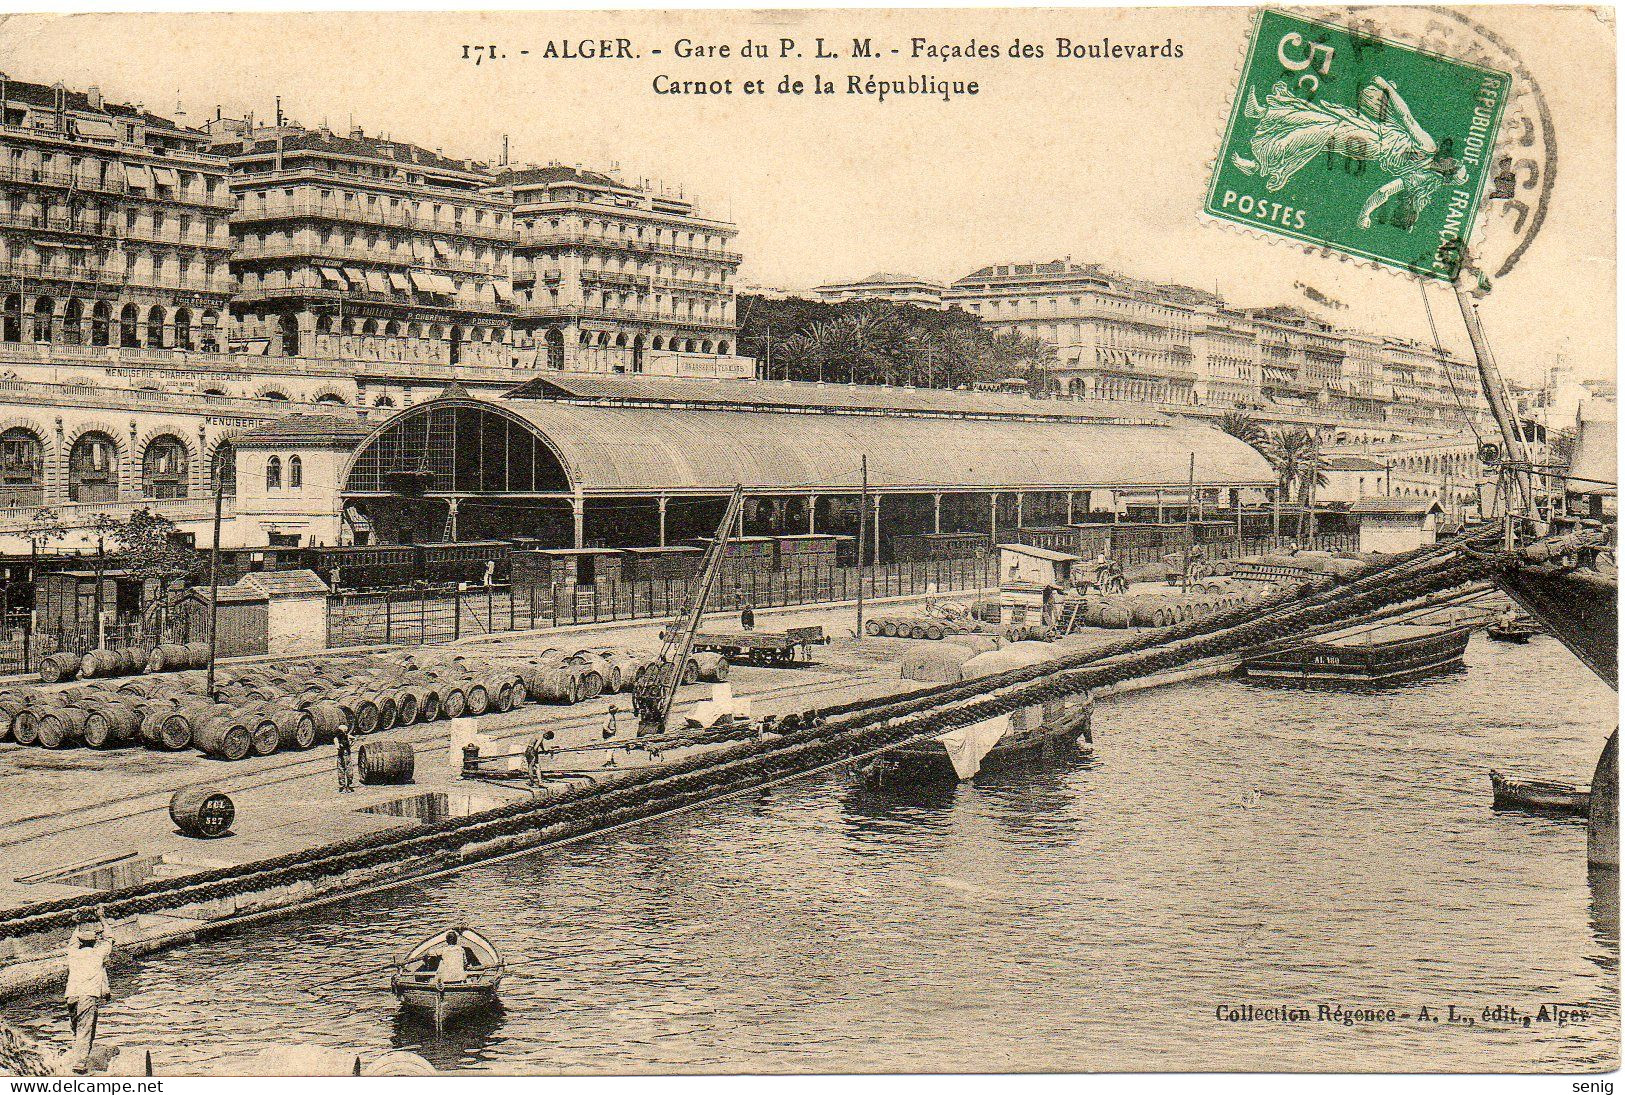 ALGERIE - ALGER - 171 - Gare PLM Façades Carnot République - Collection Régence A. L. édit. Alger (Leroux) - - Alger